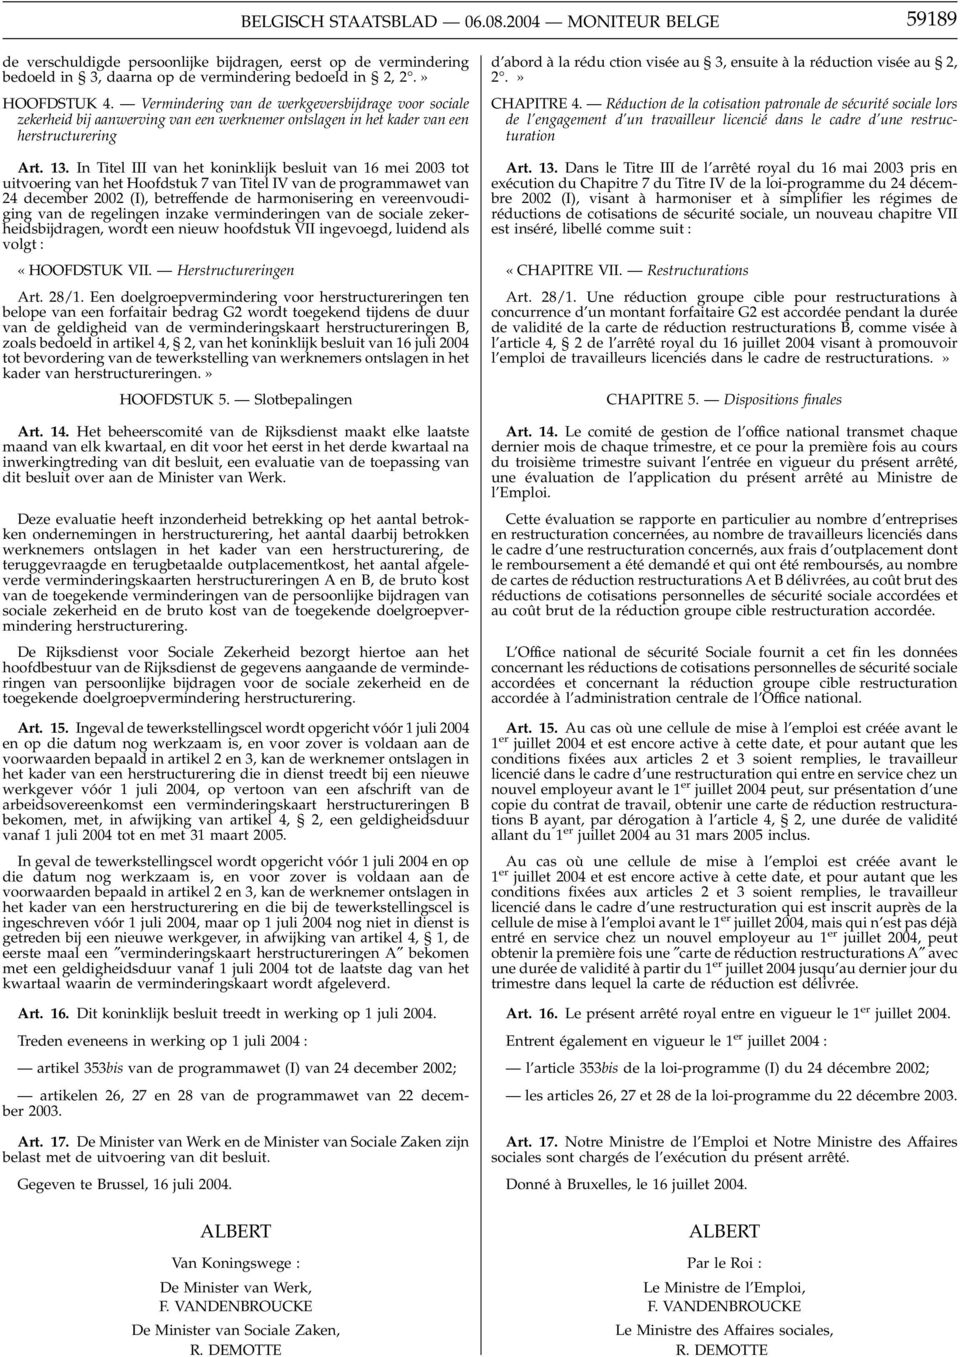 In Titel III van het koninklijk besluit van 16 mei 2003 tot uitvoering van het Hoofdstuk 7 van Titel IV van de programmawet van 24 december 2002 (I), betreffende de harmonisering en vereenvoudiging